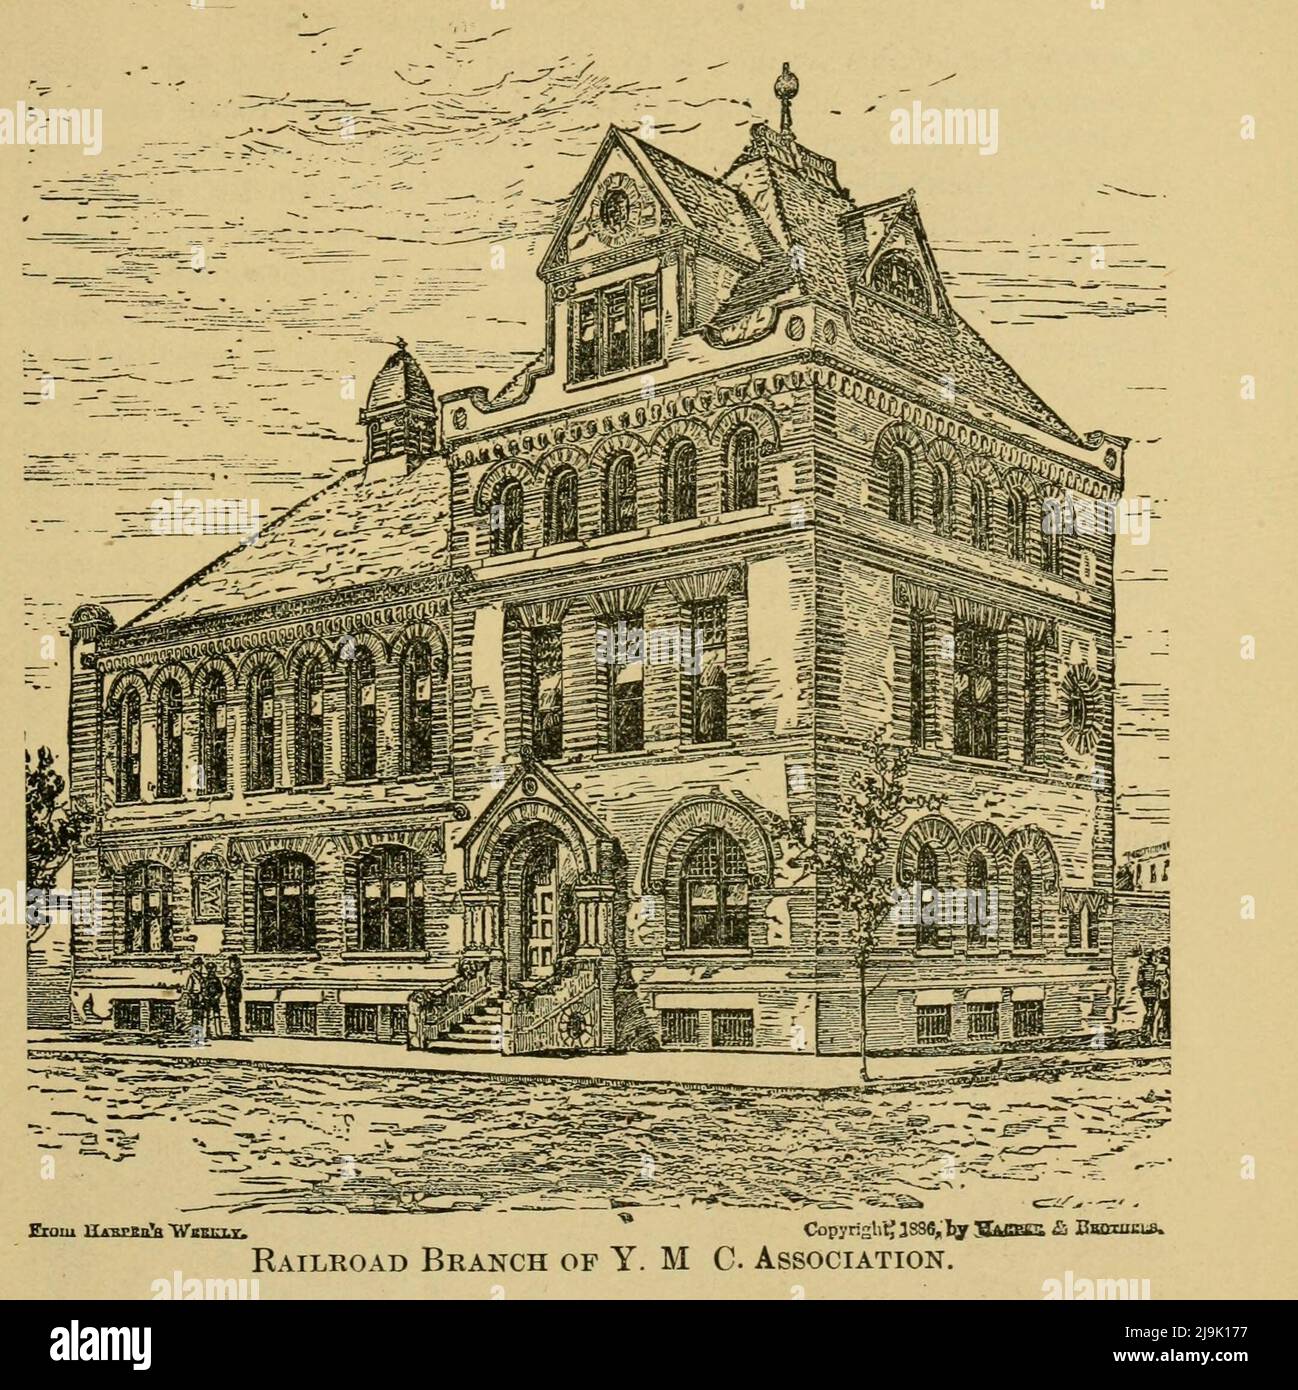 Ramal Ferroviario de YMCA 1889 de la guía ' ilustró la ciudad de Nueva York y sus alrededores. Una guía descriptiva de lugares de interés ' por Charles W Hobbs, Fecha de publicación 1889 Editorial New York, C.W. Hobbs & co Foto de stock